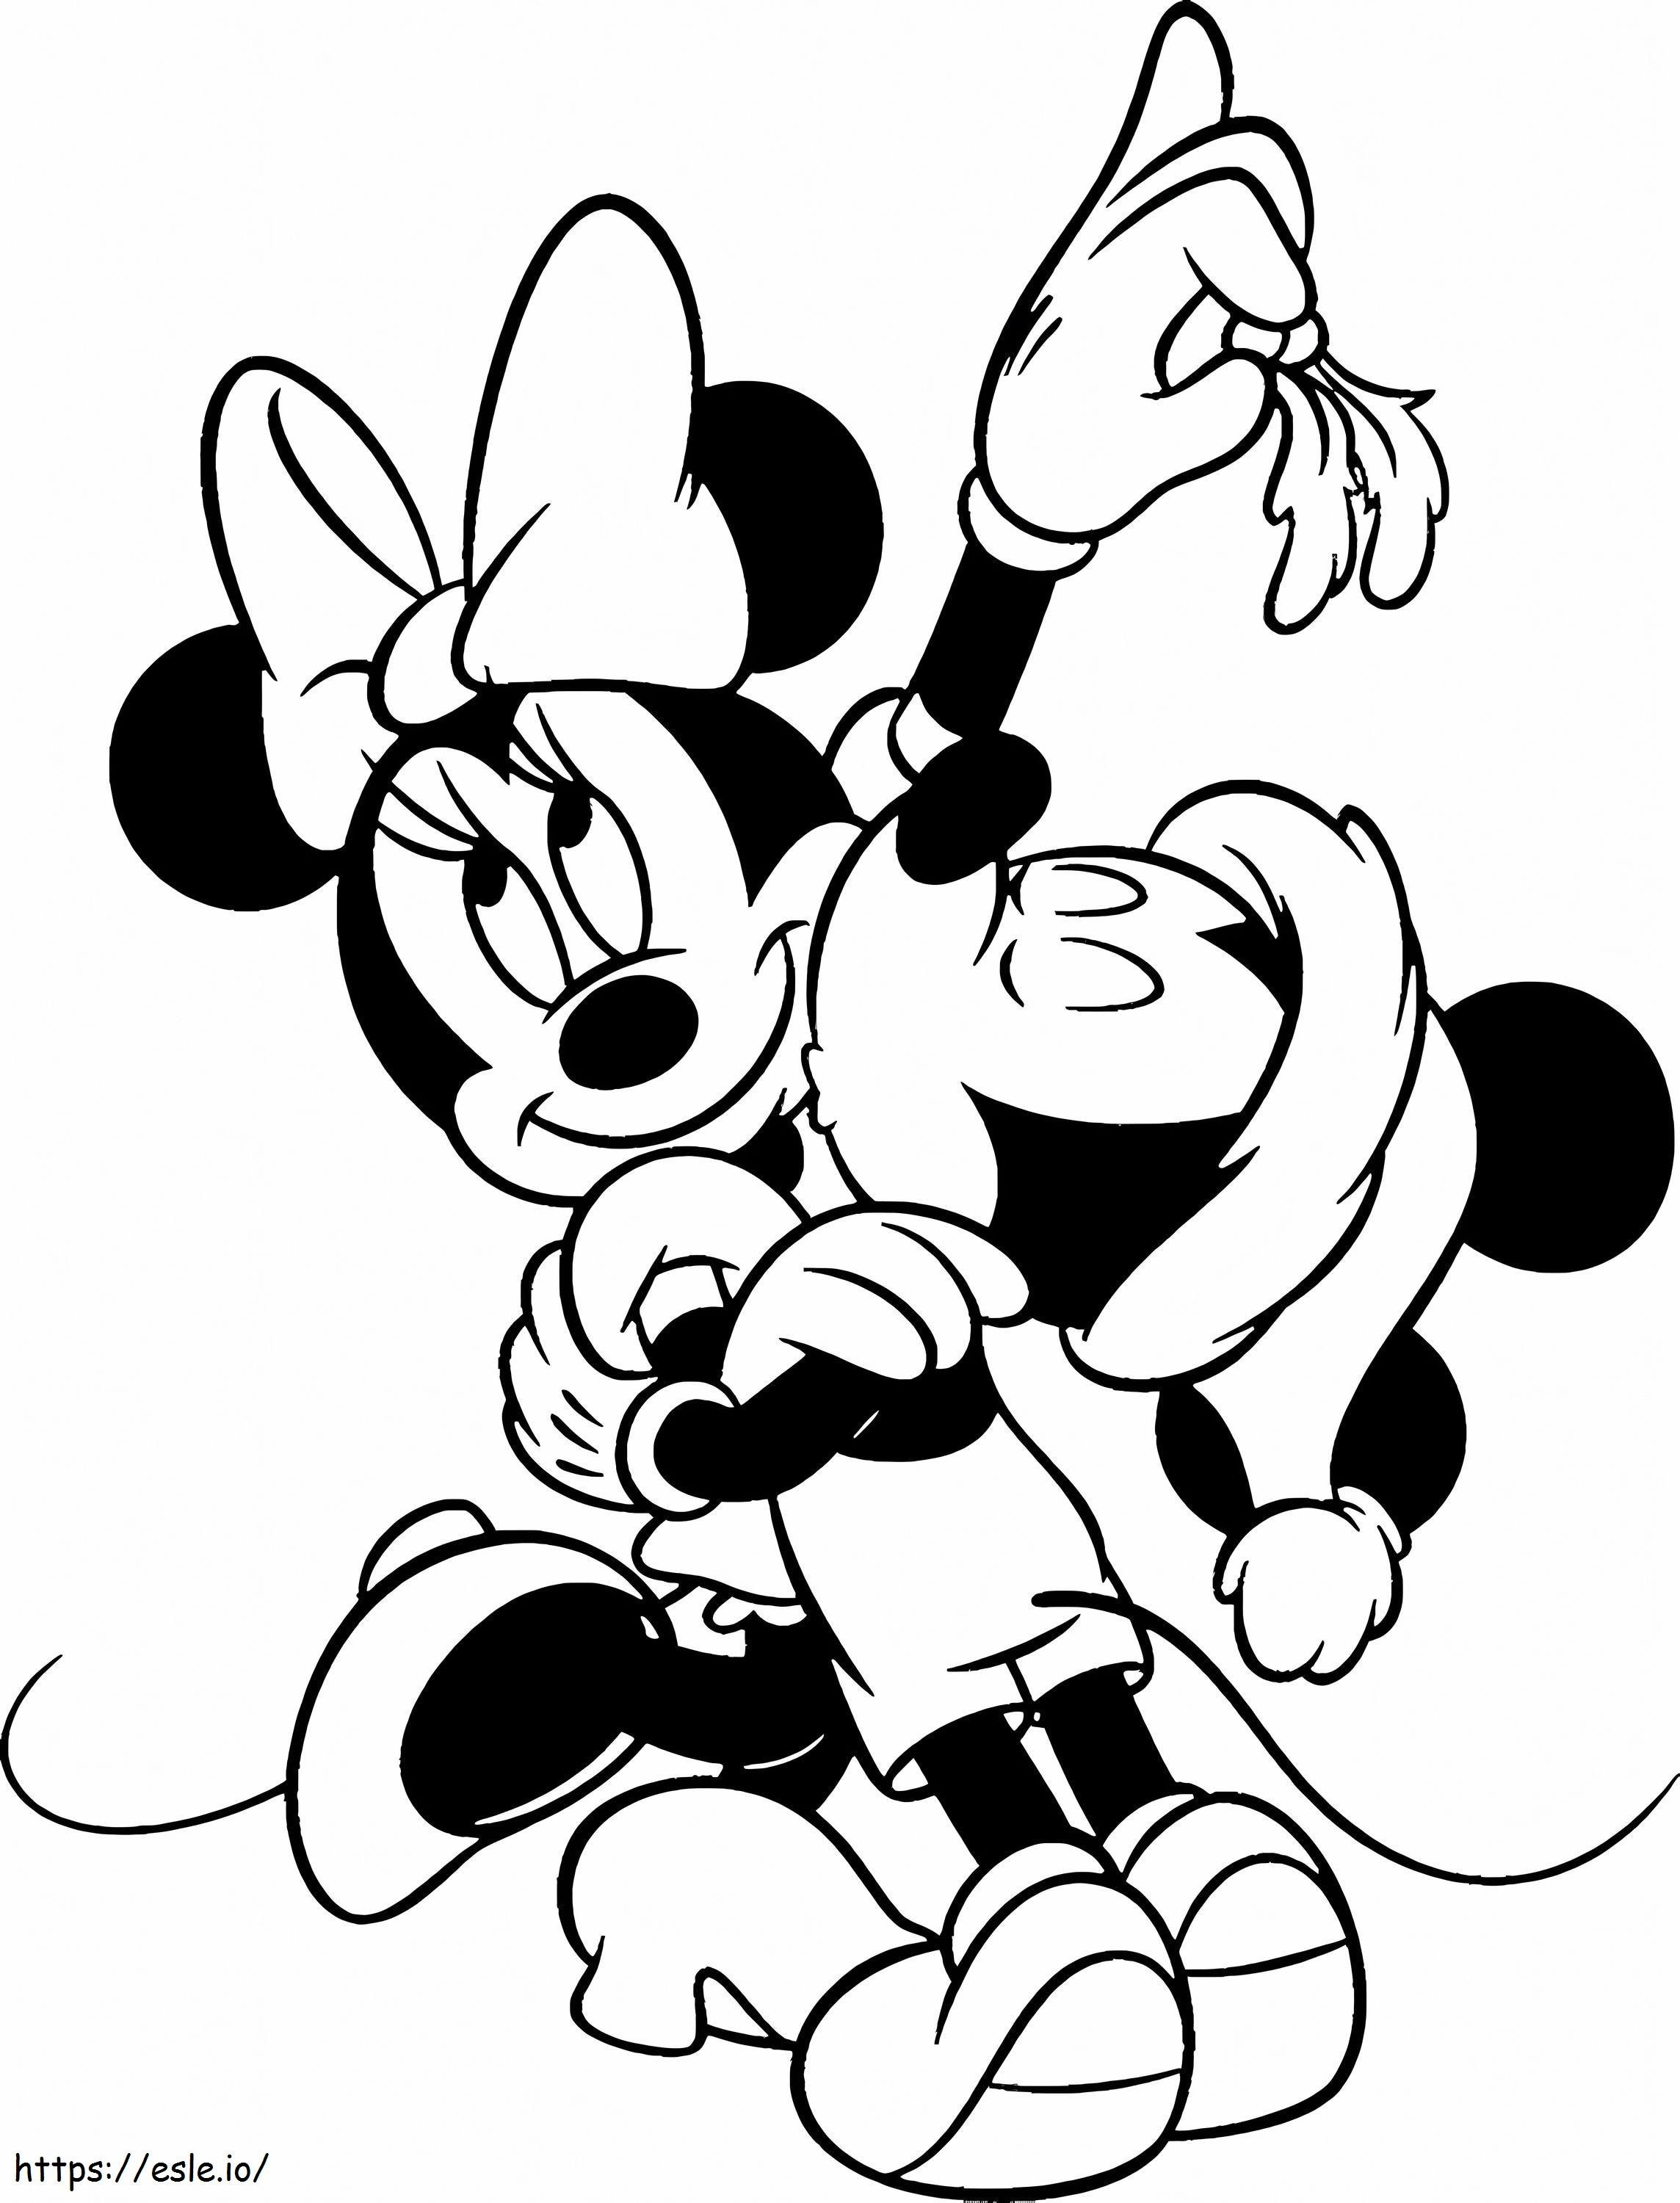 Mickey și Minnie Mouse de Crăciun de colorat